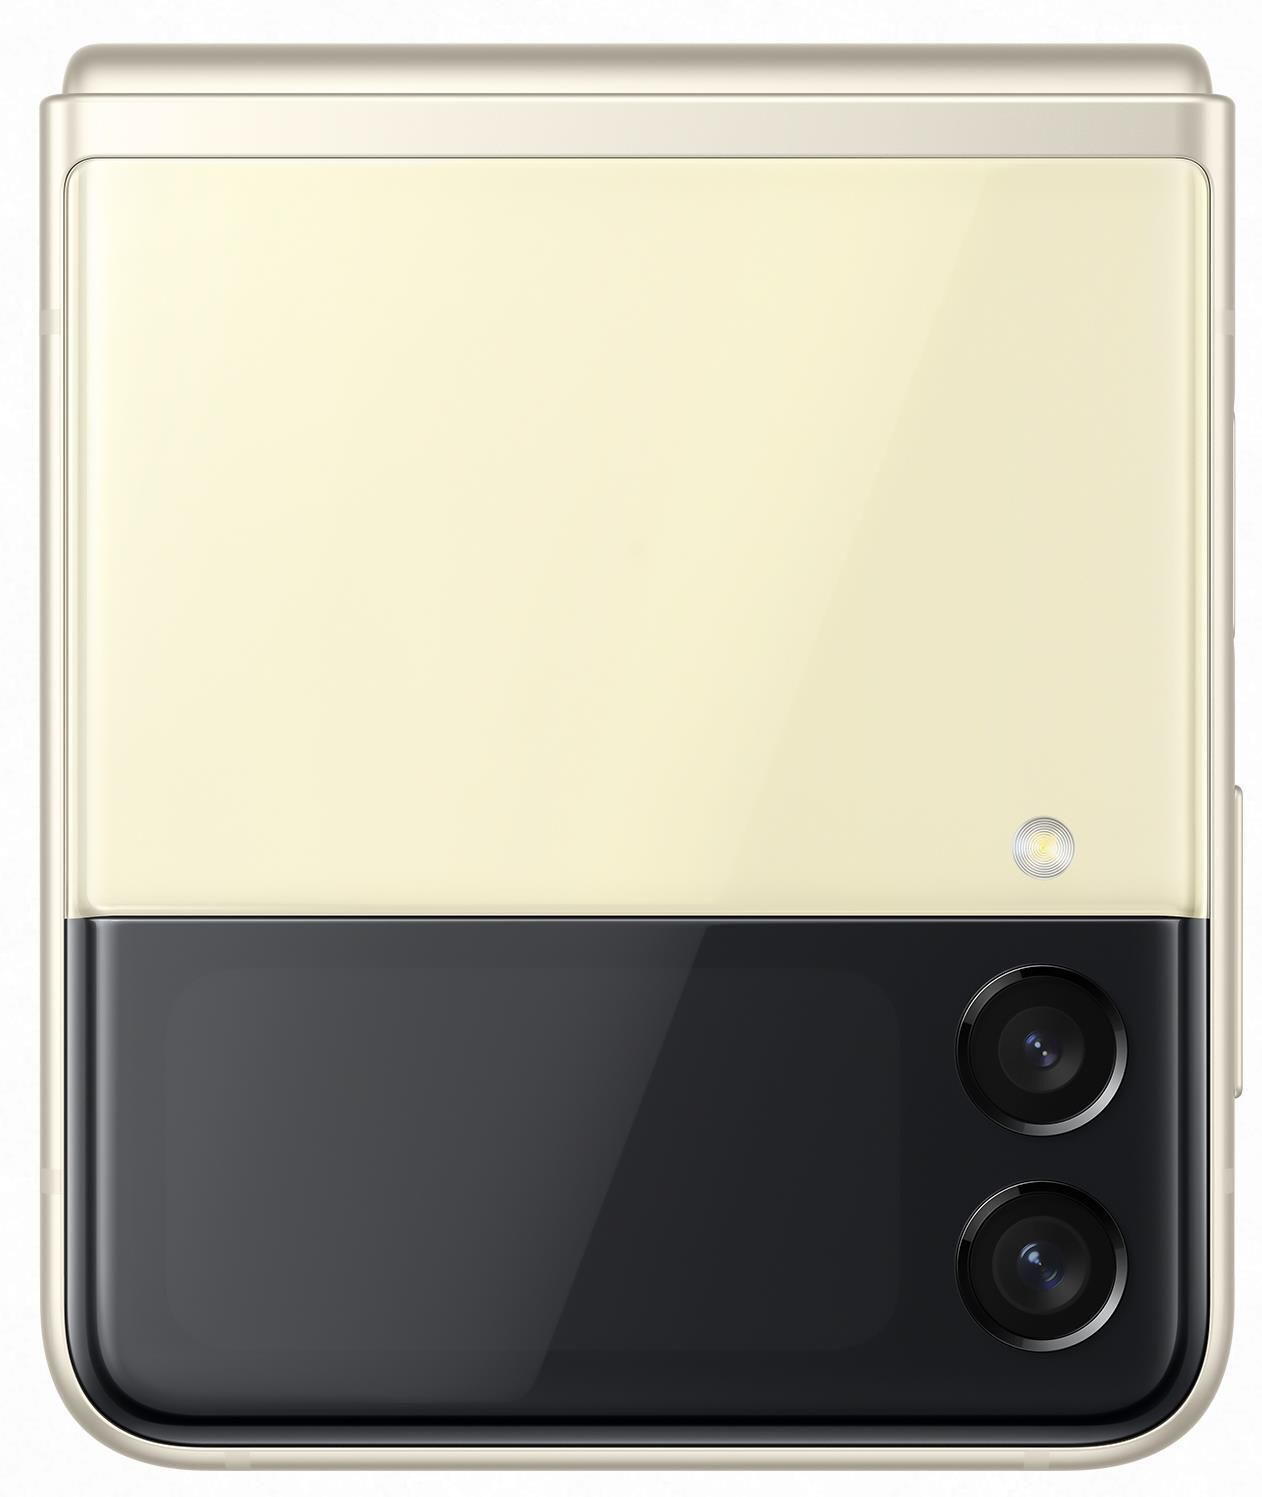 Samsung Galaxy Z Flip 3 5G / Foldable 6.7 Dynamic AMOLED + 1.9 Super AMOLED / Snapdragon 888 / 8GB / 256GB / 3300mAh /